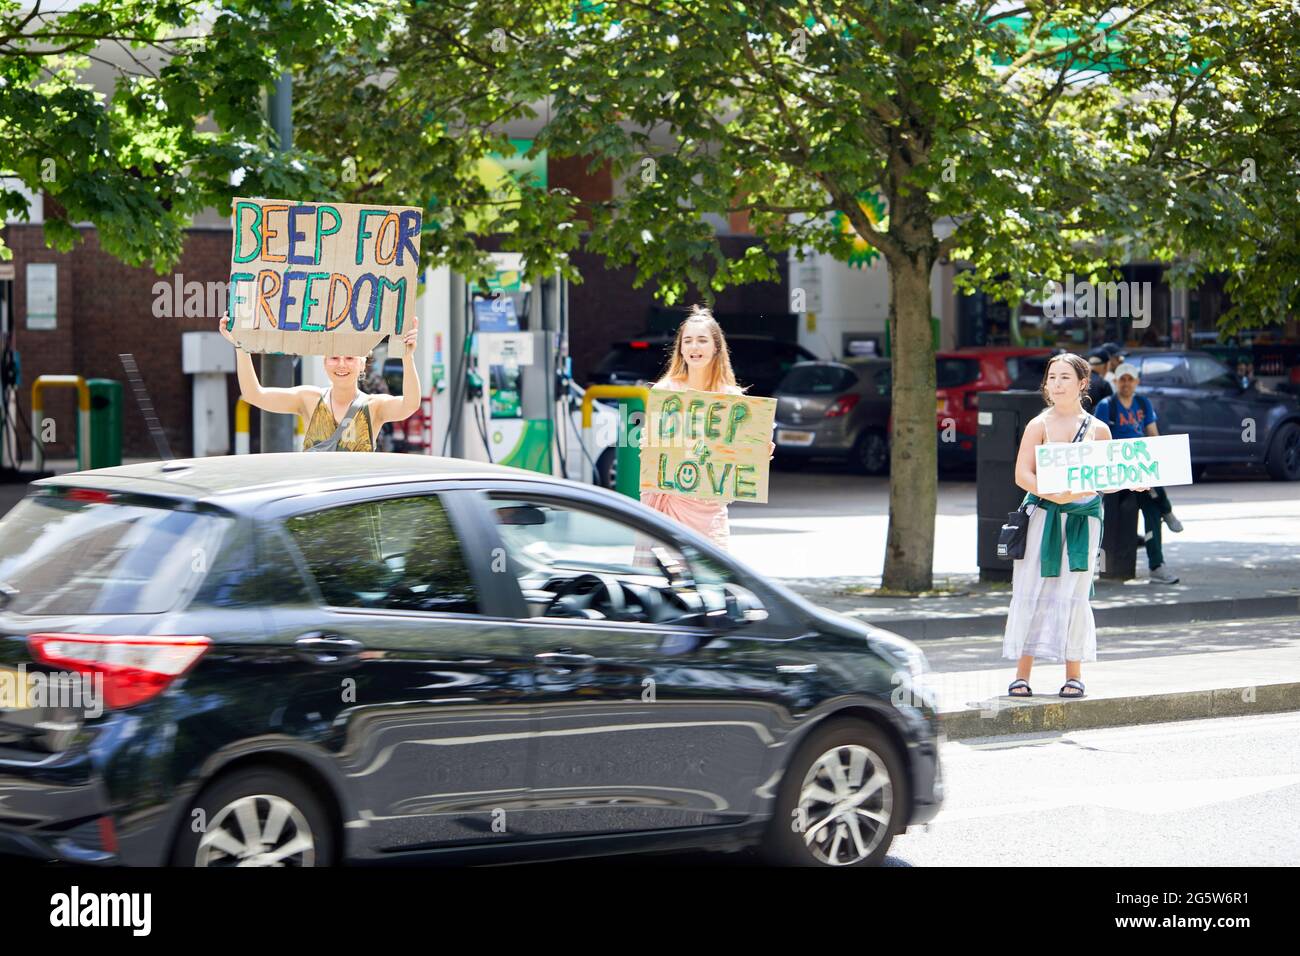 Londres, Reino Unido - 15 de junio de 2021: Los manifestantes del amoroso campo anti-encierro en Shepherds Bush Green ganan apoyo para su causa de los motoristas que pasan. Foto de stock